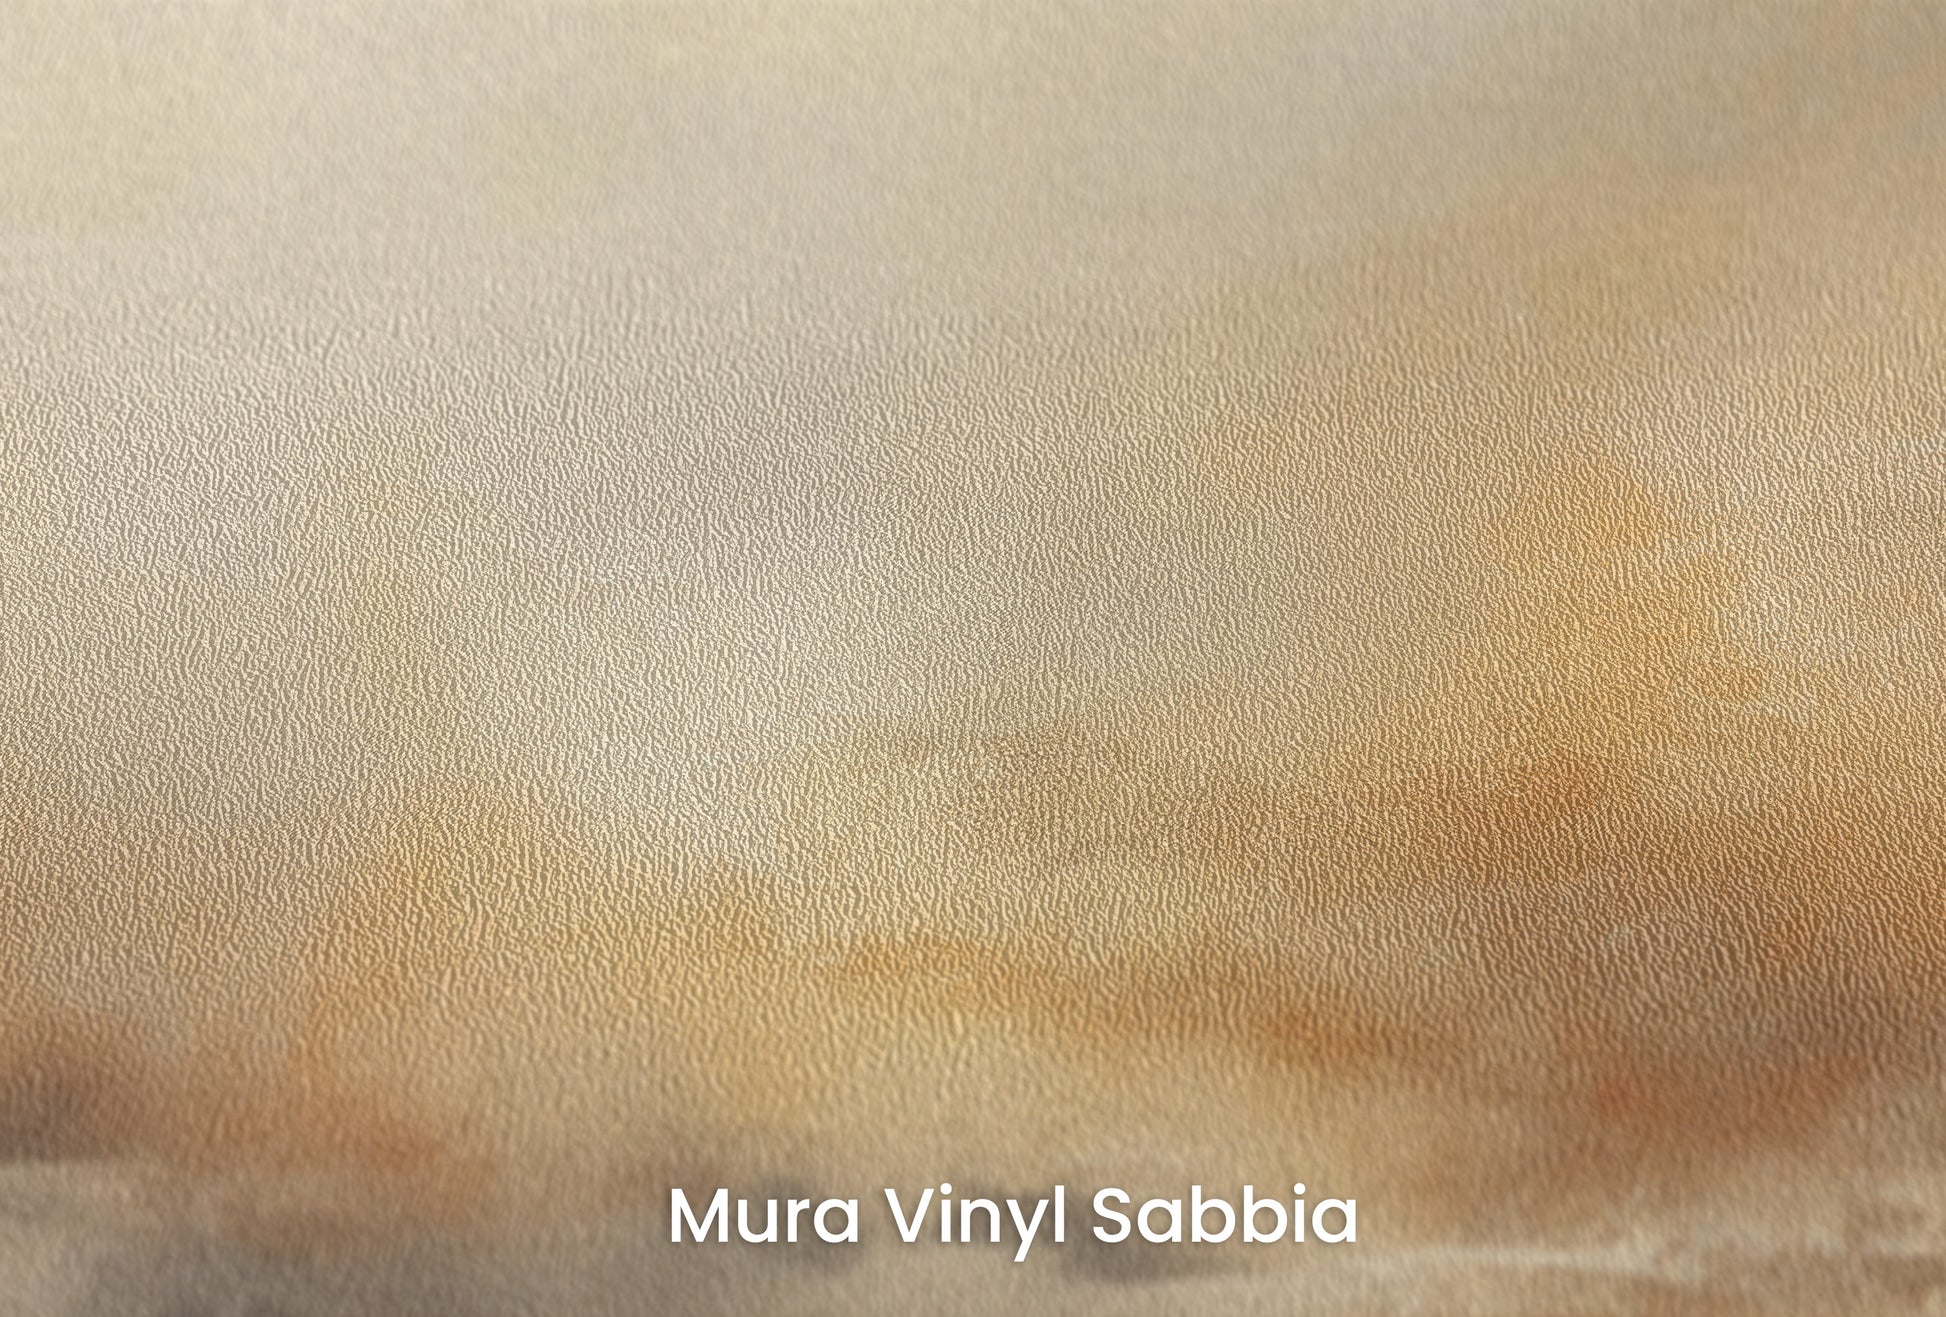 Zbliżenie na artystyczną fototapetę o nazwie HORIZON GLOW na podłożu Mura Vinyl Sabbia struktura grubego ziarna piasku.